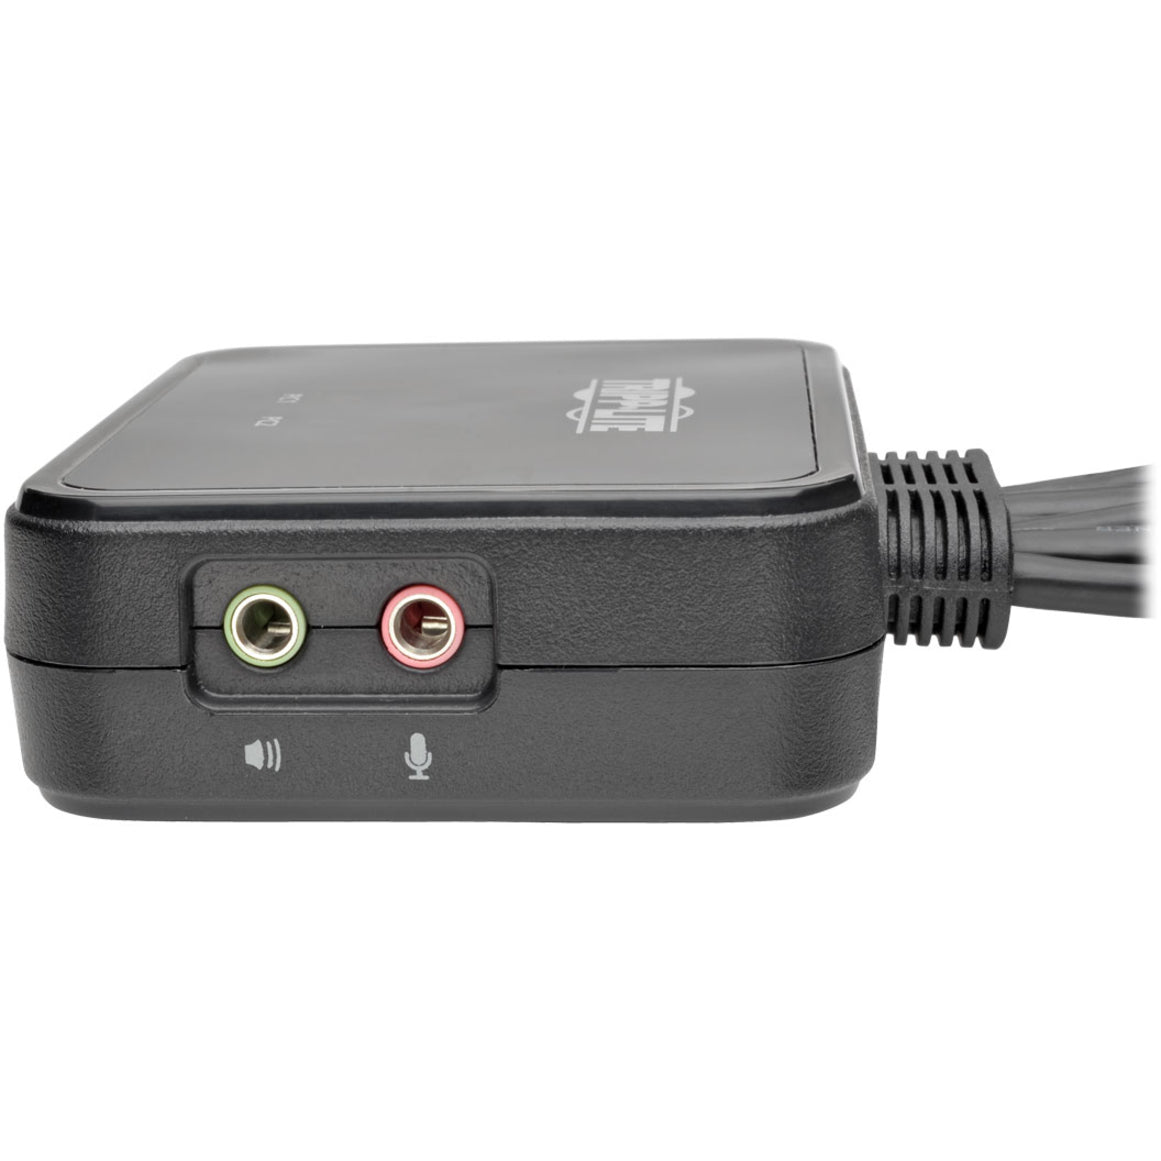 Tripp Lite B032-HUA2 2-Port USB/HD Cable KVM Switch, 1920 x 1200 Maximum Video Resolution, 3 Year Limited Warranty